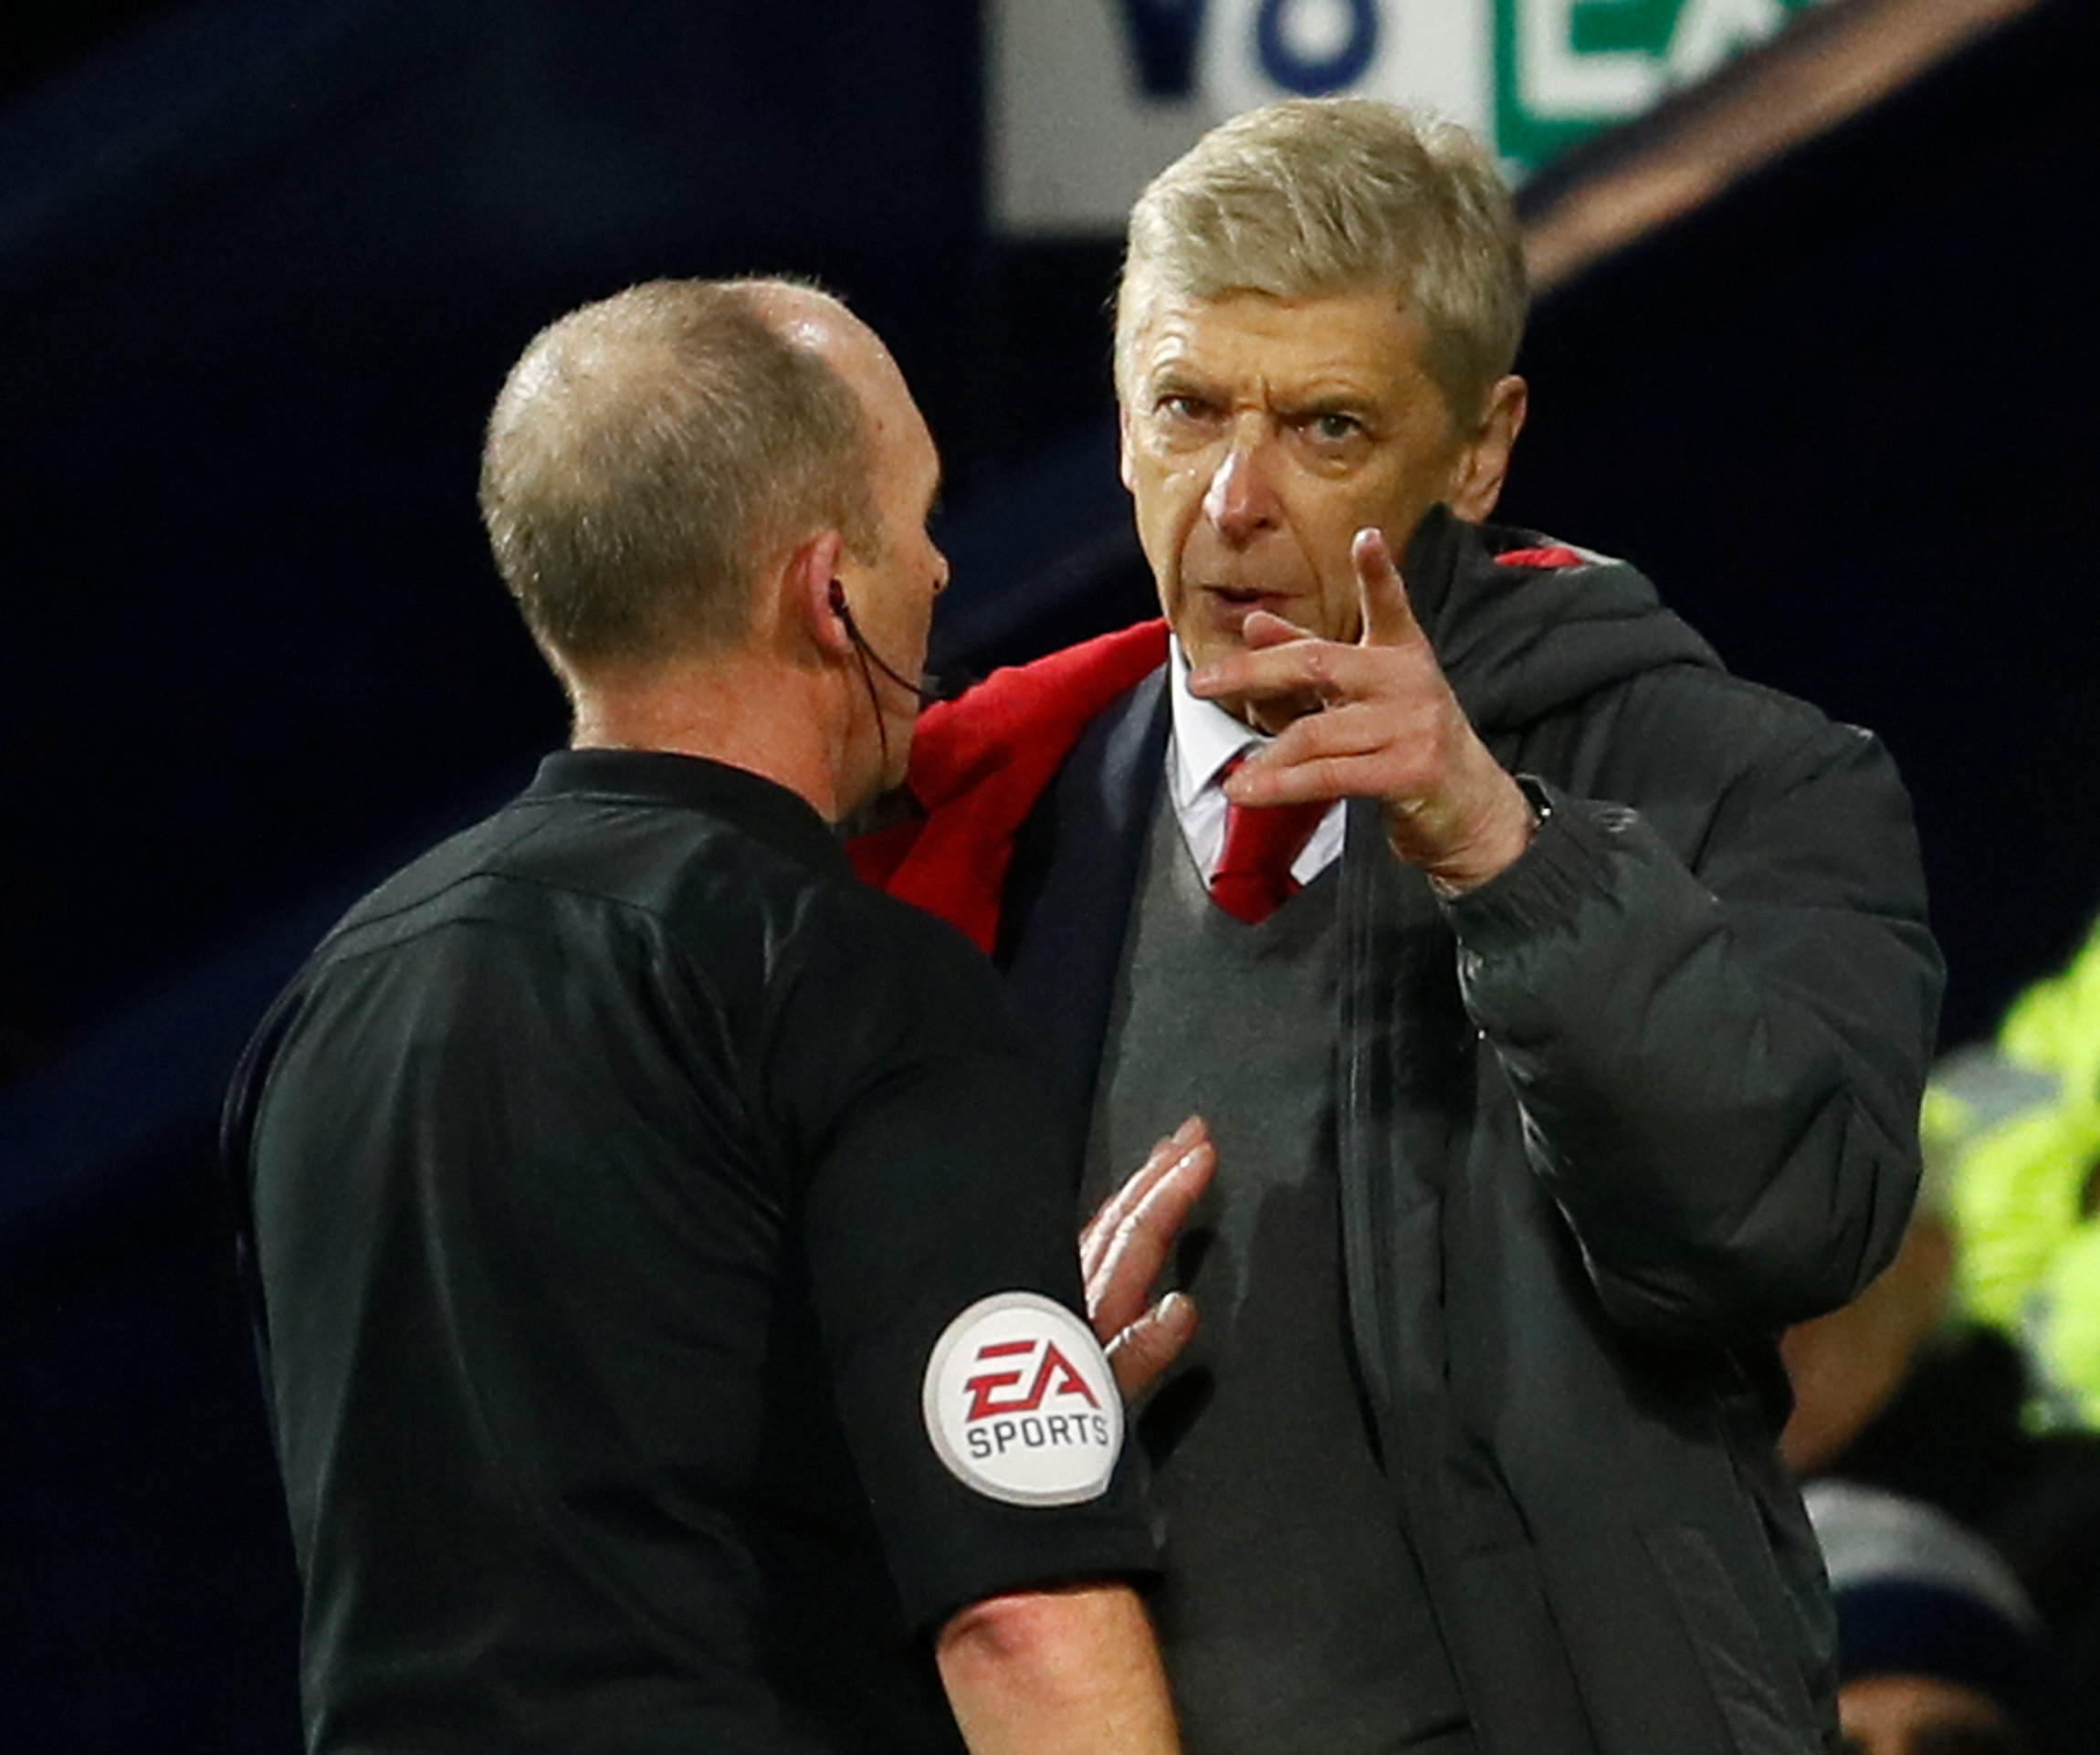 HLV Wenger phàn nàn với trọng tài sau khi Arsenal bị phạt penalty. Ảnh: REUTERS